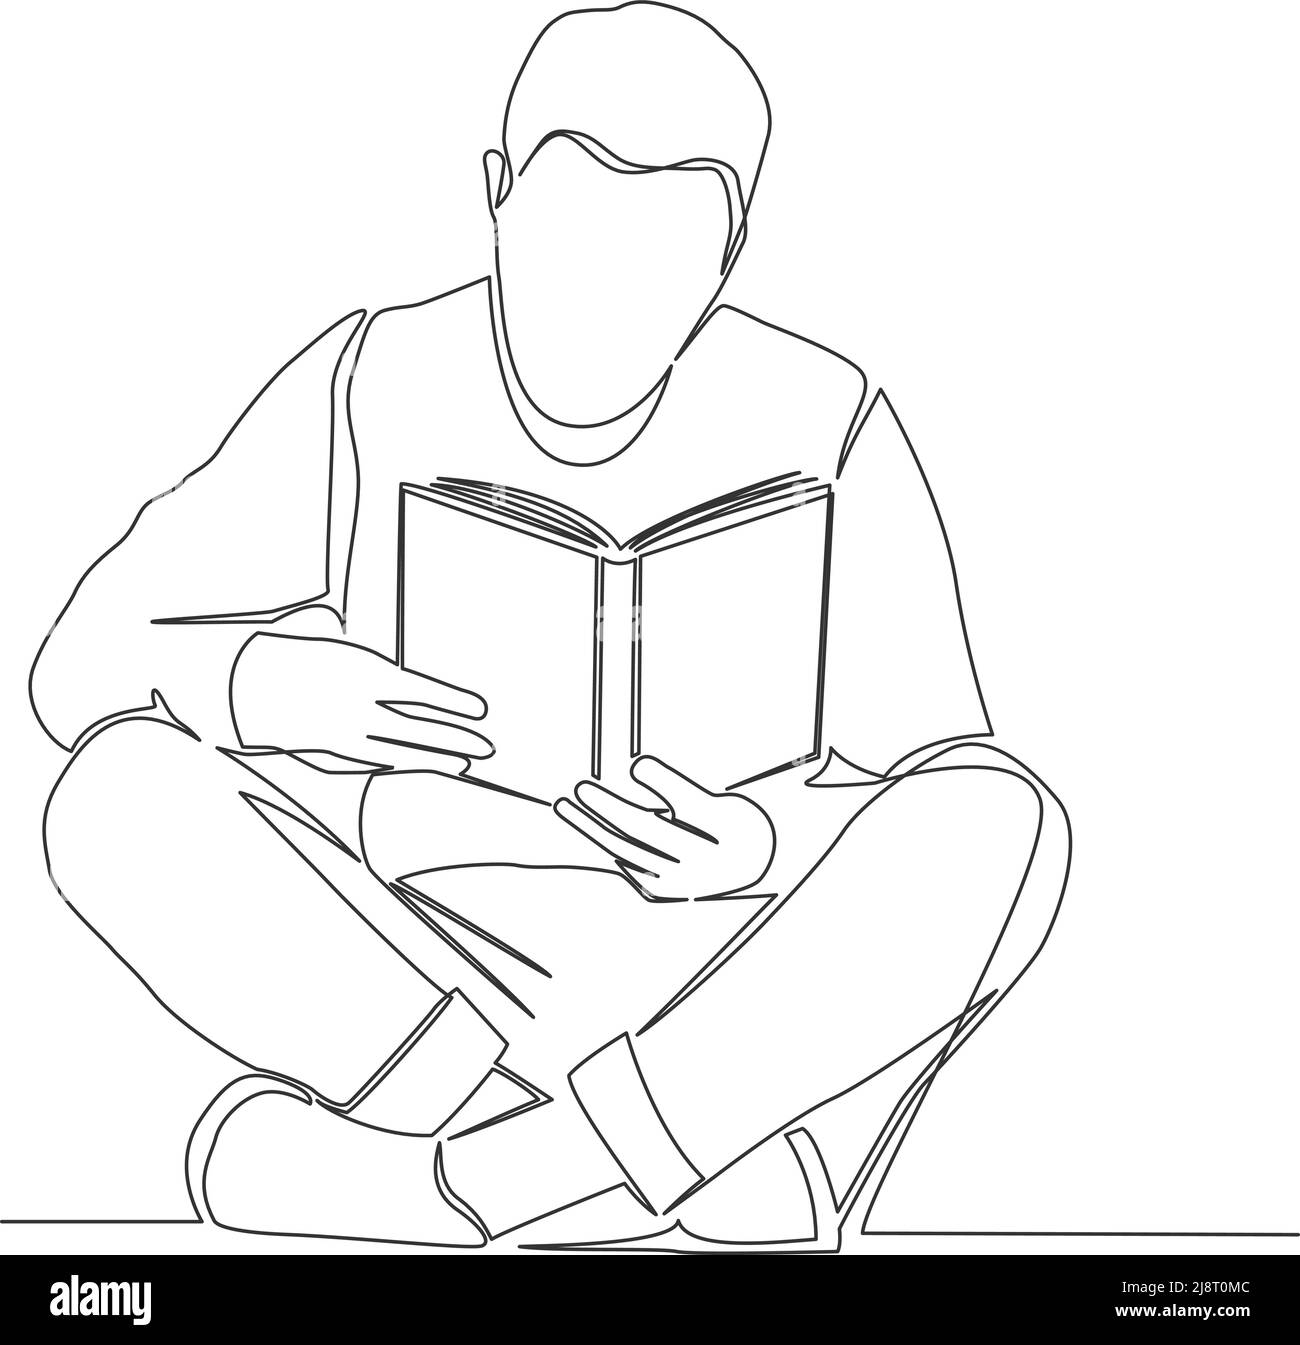 disegno a riga singola di persona che legge libro seduto a gambe incrociate a terra, illustrazione vettoriale di arte di linea Illustrazione Vettoriale